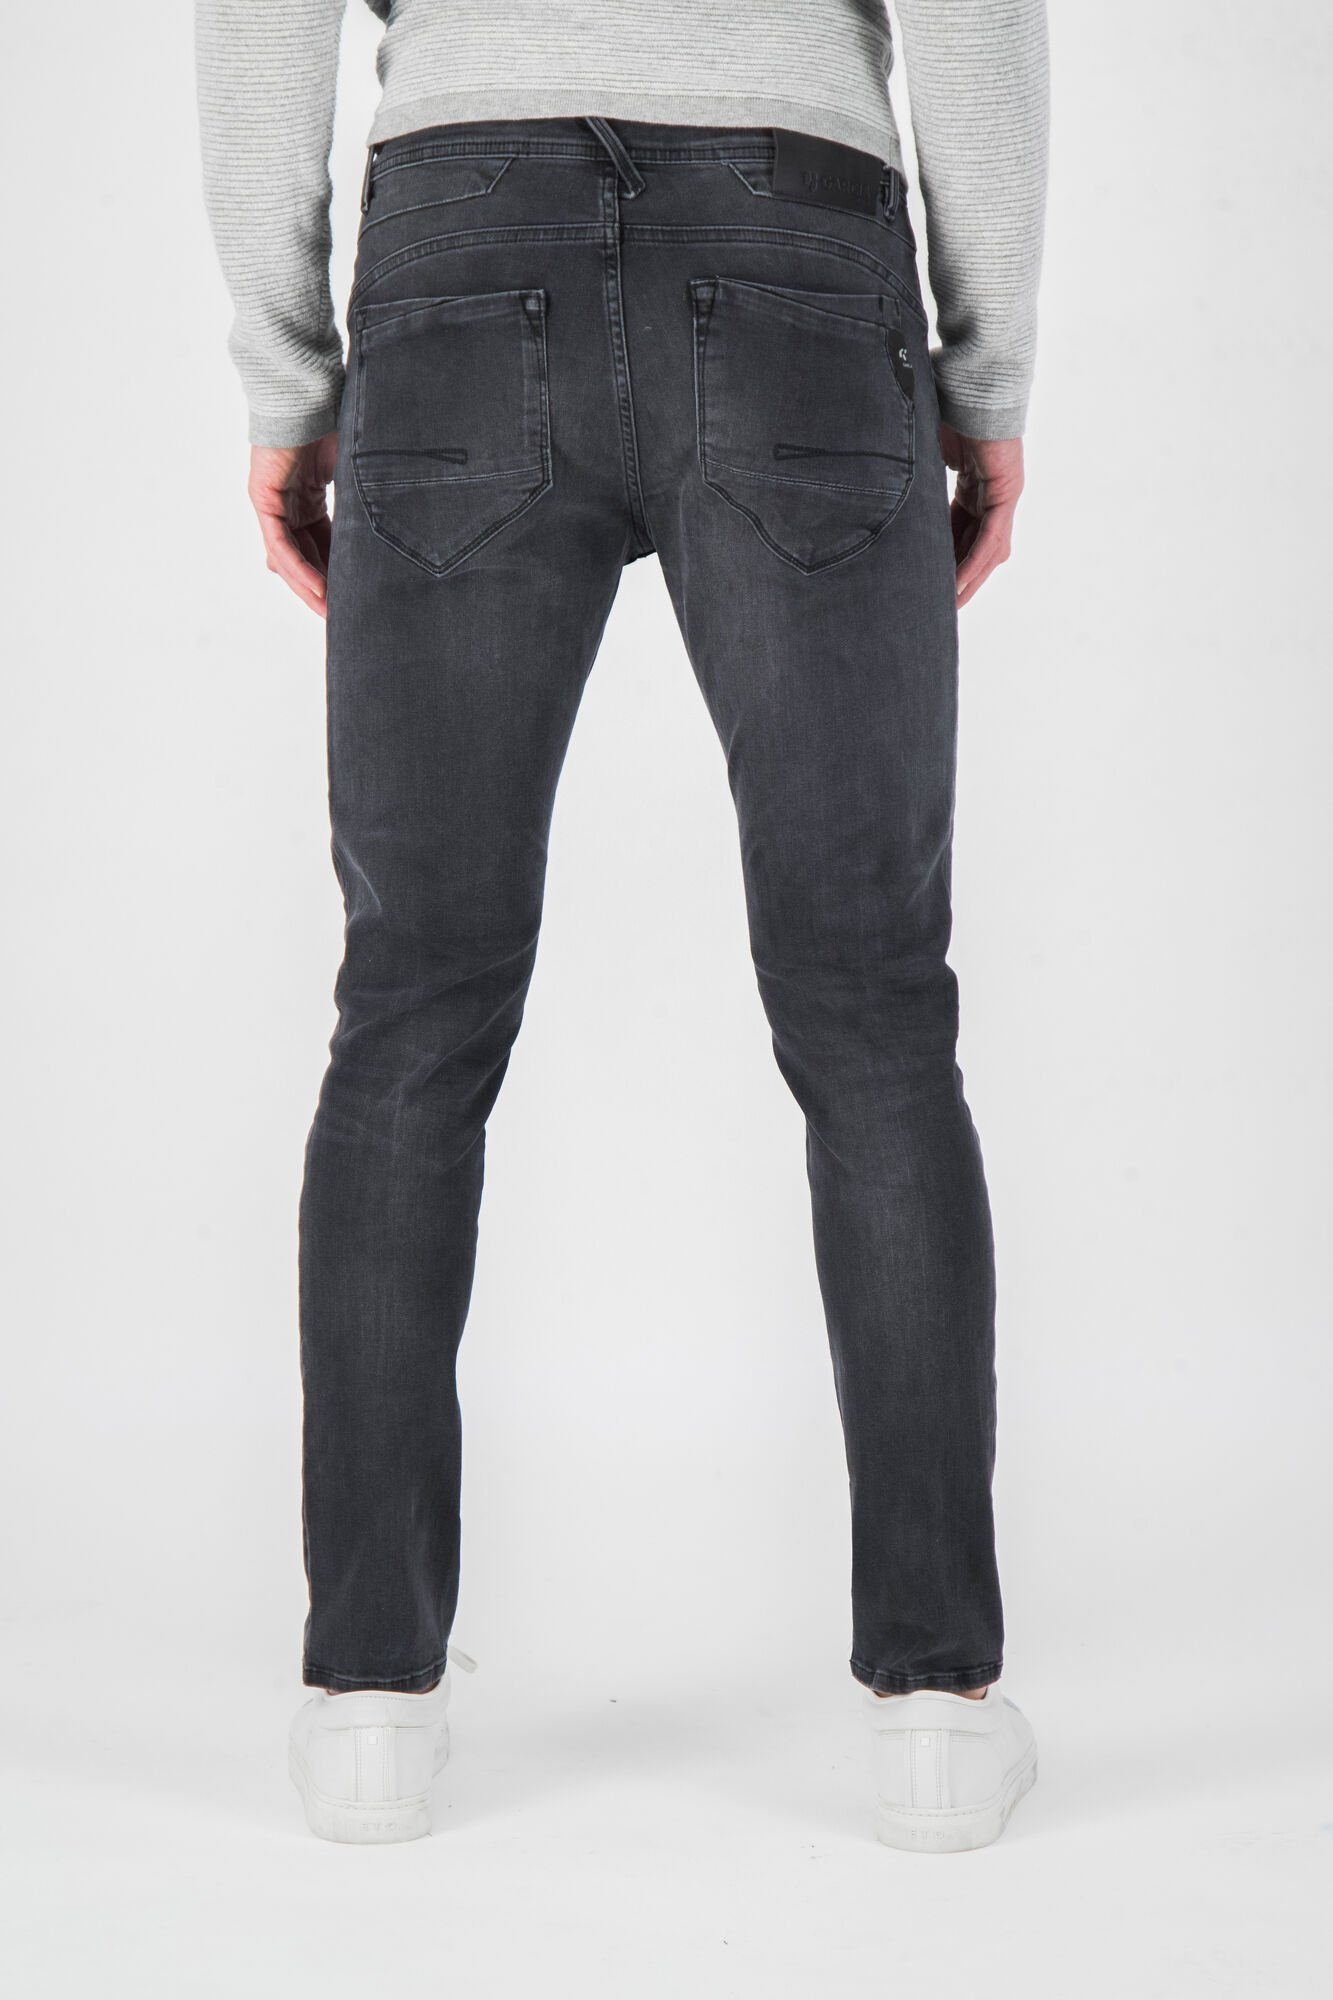 ROCKO 690.6080 grey GARCIA schwarz 5-Pocket-Jeans GARCIA JEANS used dark